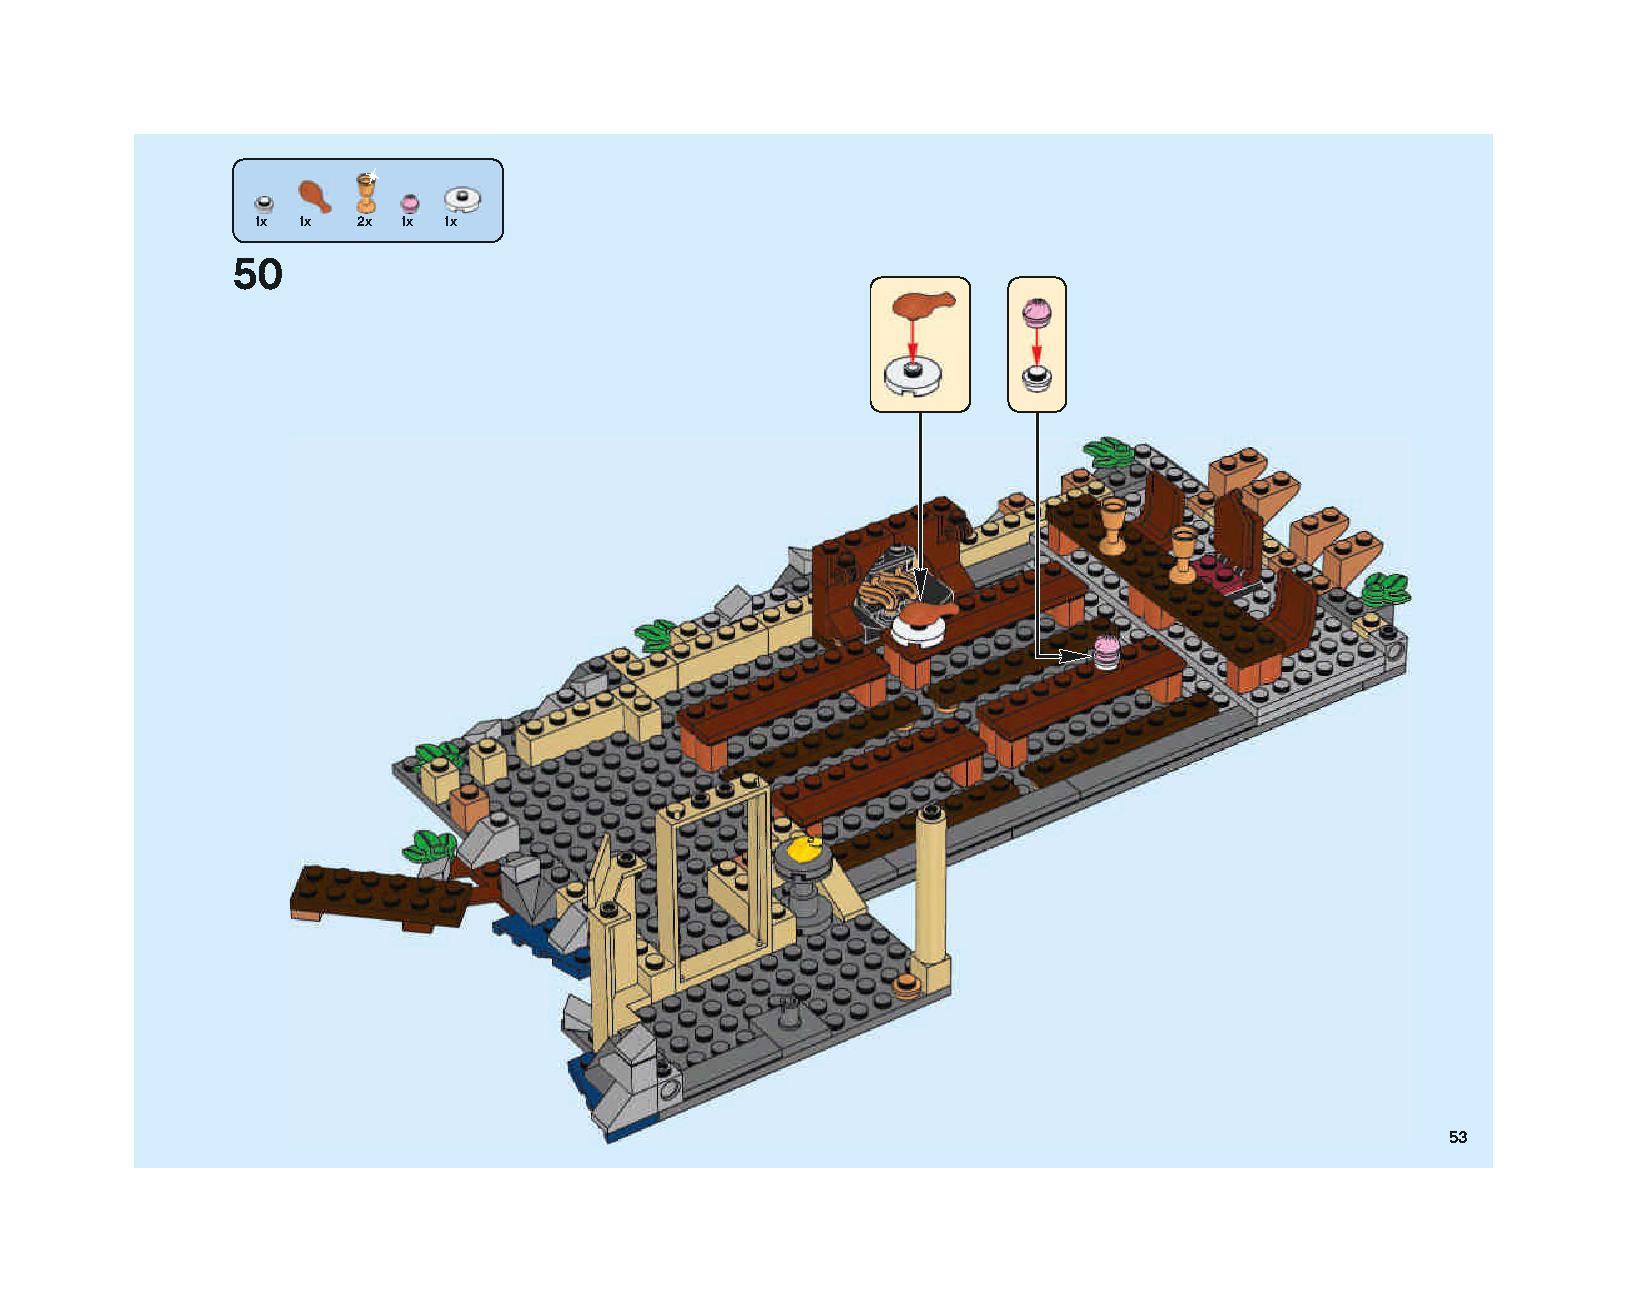 ホグワーツの大広間 75954 レゴの商品情報 レゴの説明書・組立方法 53 page